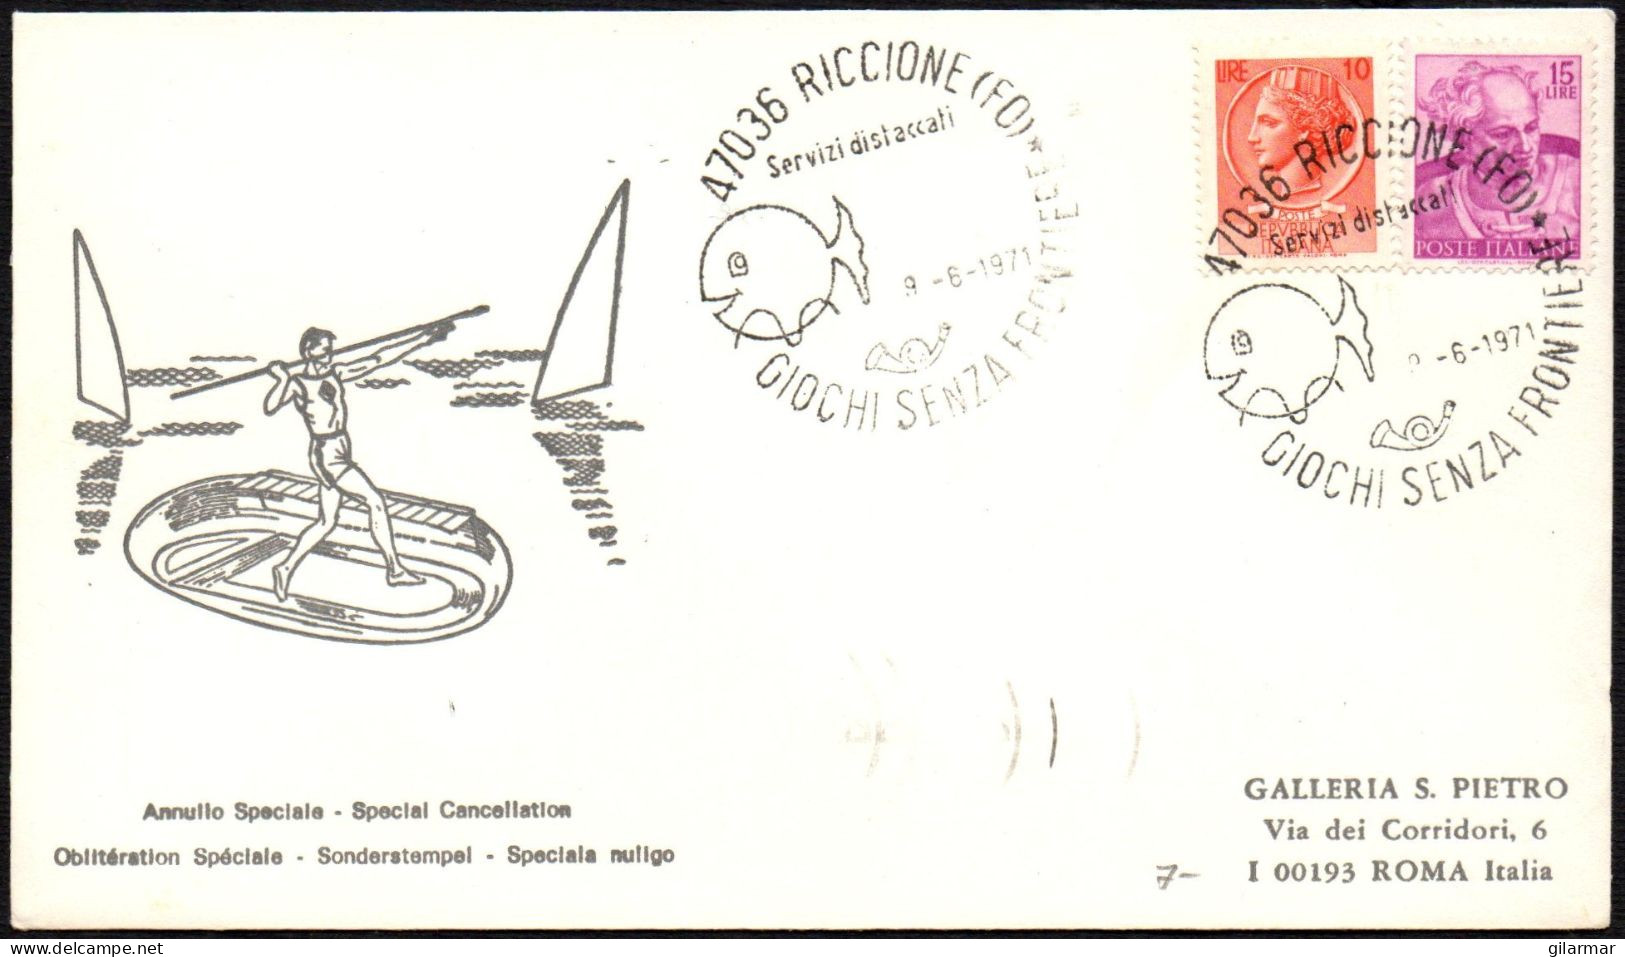 ITALIA RICCIONE (FO) 1971 - GIOCHI SENZA FRONTIERE - BUSTA VIAGGIATA - BOLLO ARRIVO ROMA RISPARMIO POSTALE - M - Non Classificati